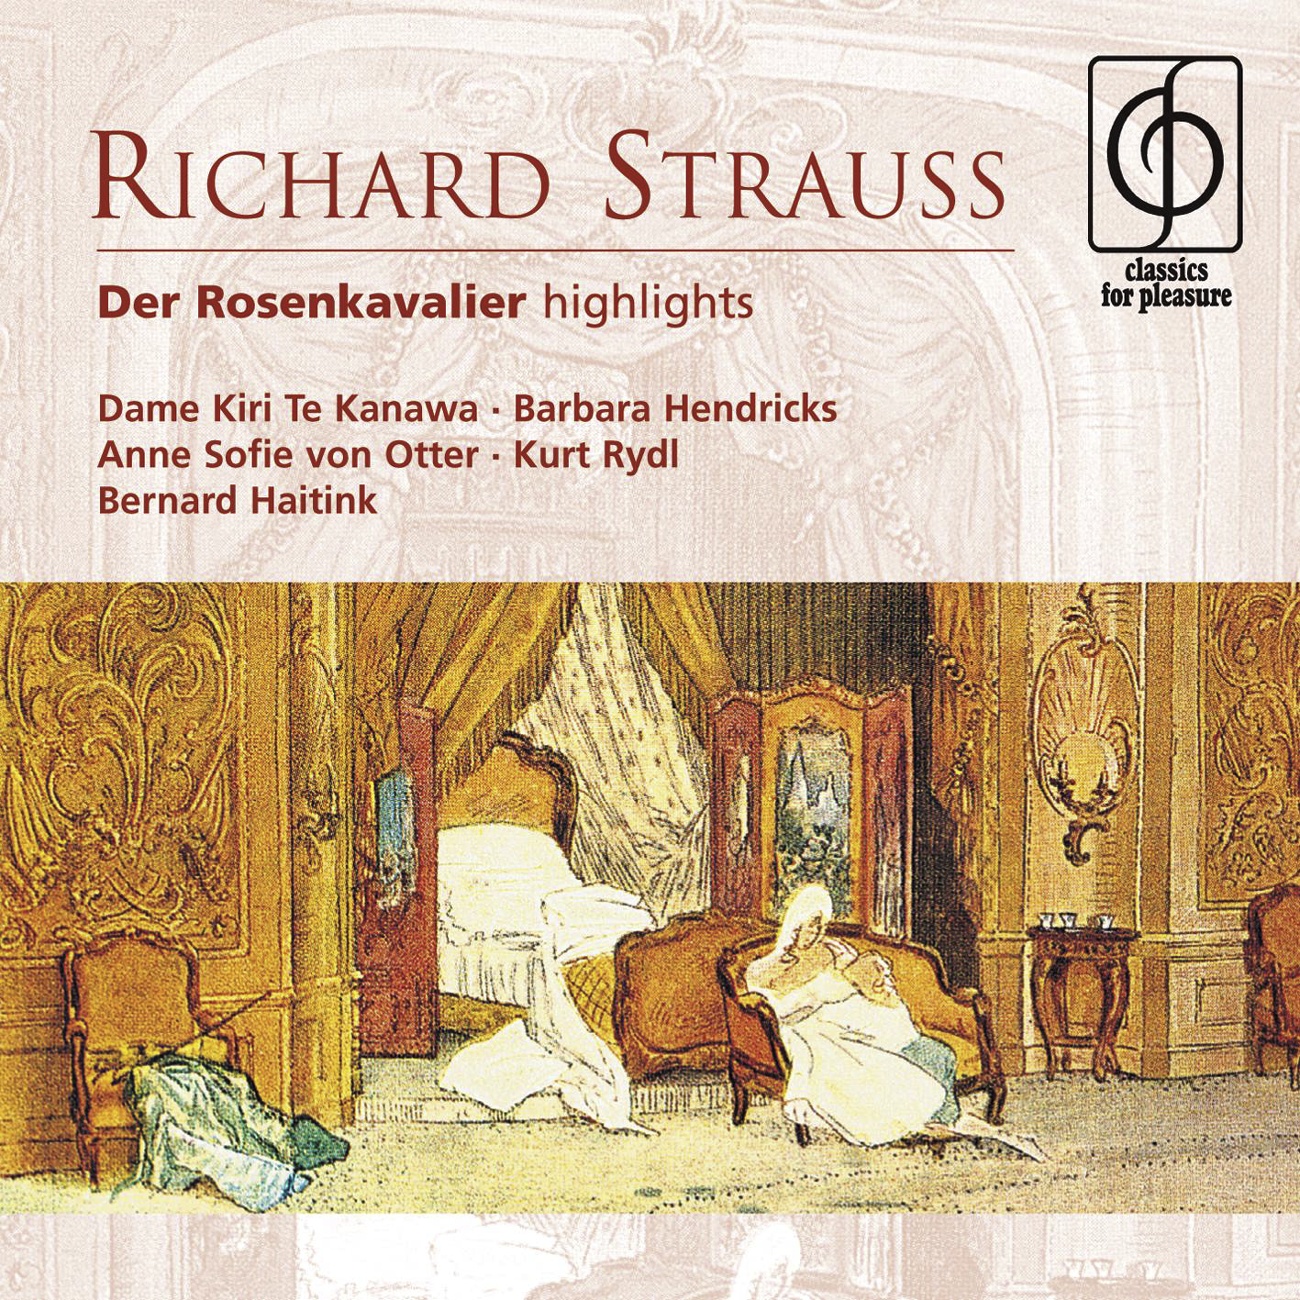 Der Rosenkavalier (highlights), Act III: Ist ein Traum...Spr' nur dich (Finale) (Sophie, Octavian, Faninal, Marschallin)...